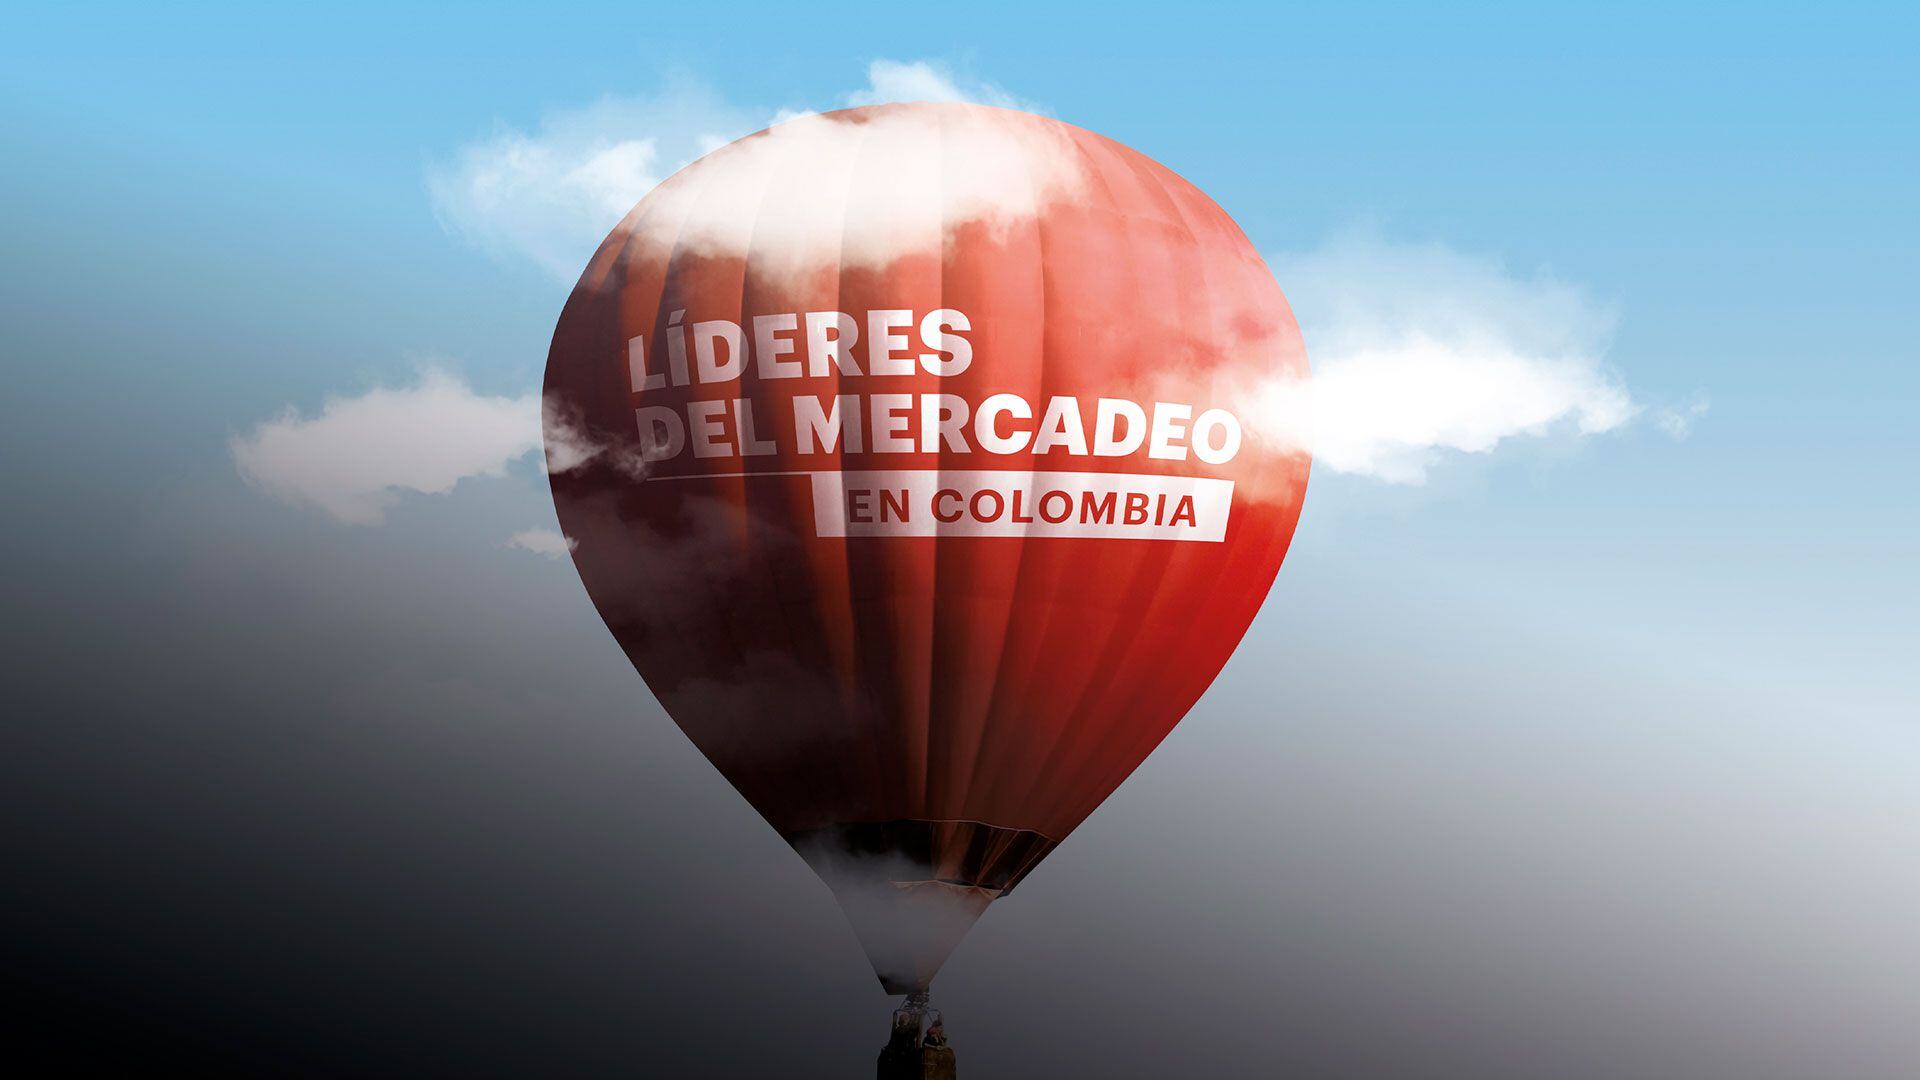 Especial Líderes del mercadeo en Colombia